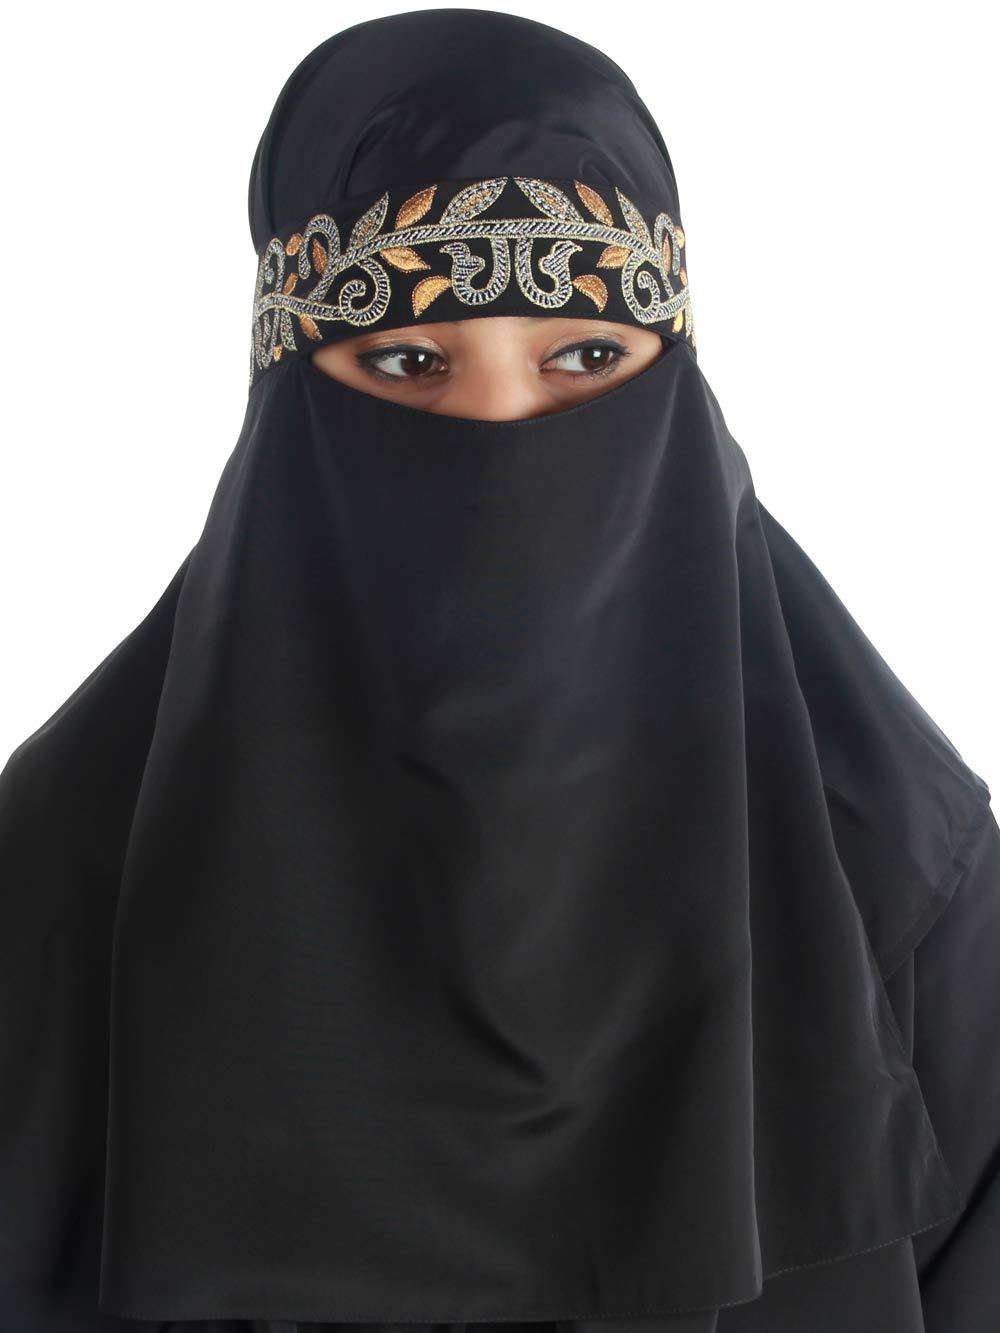 Hifza Black Crepe Embroidered Niqab